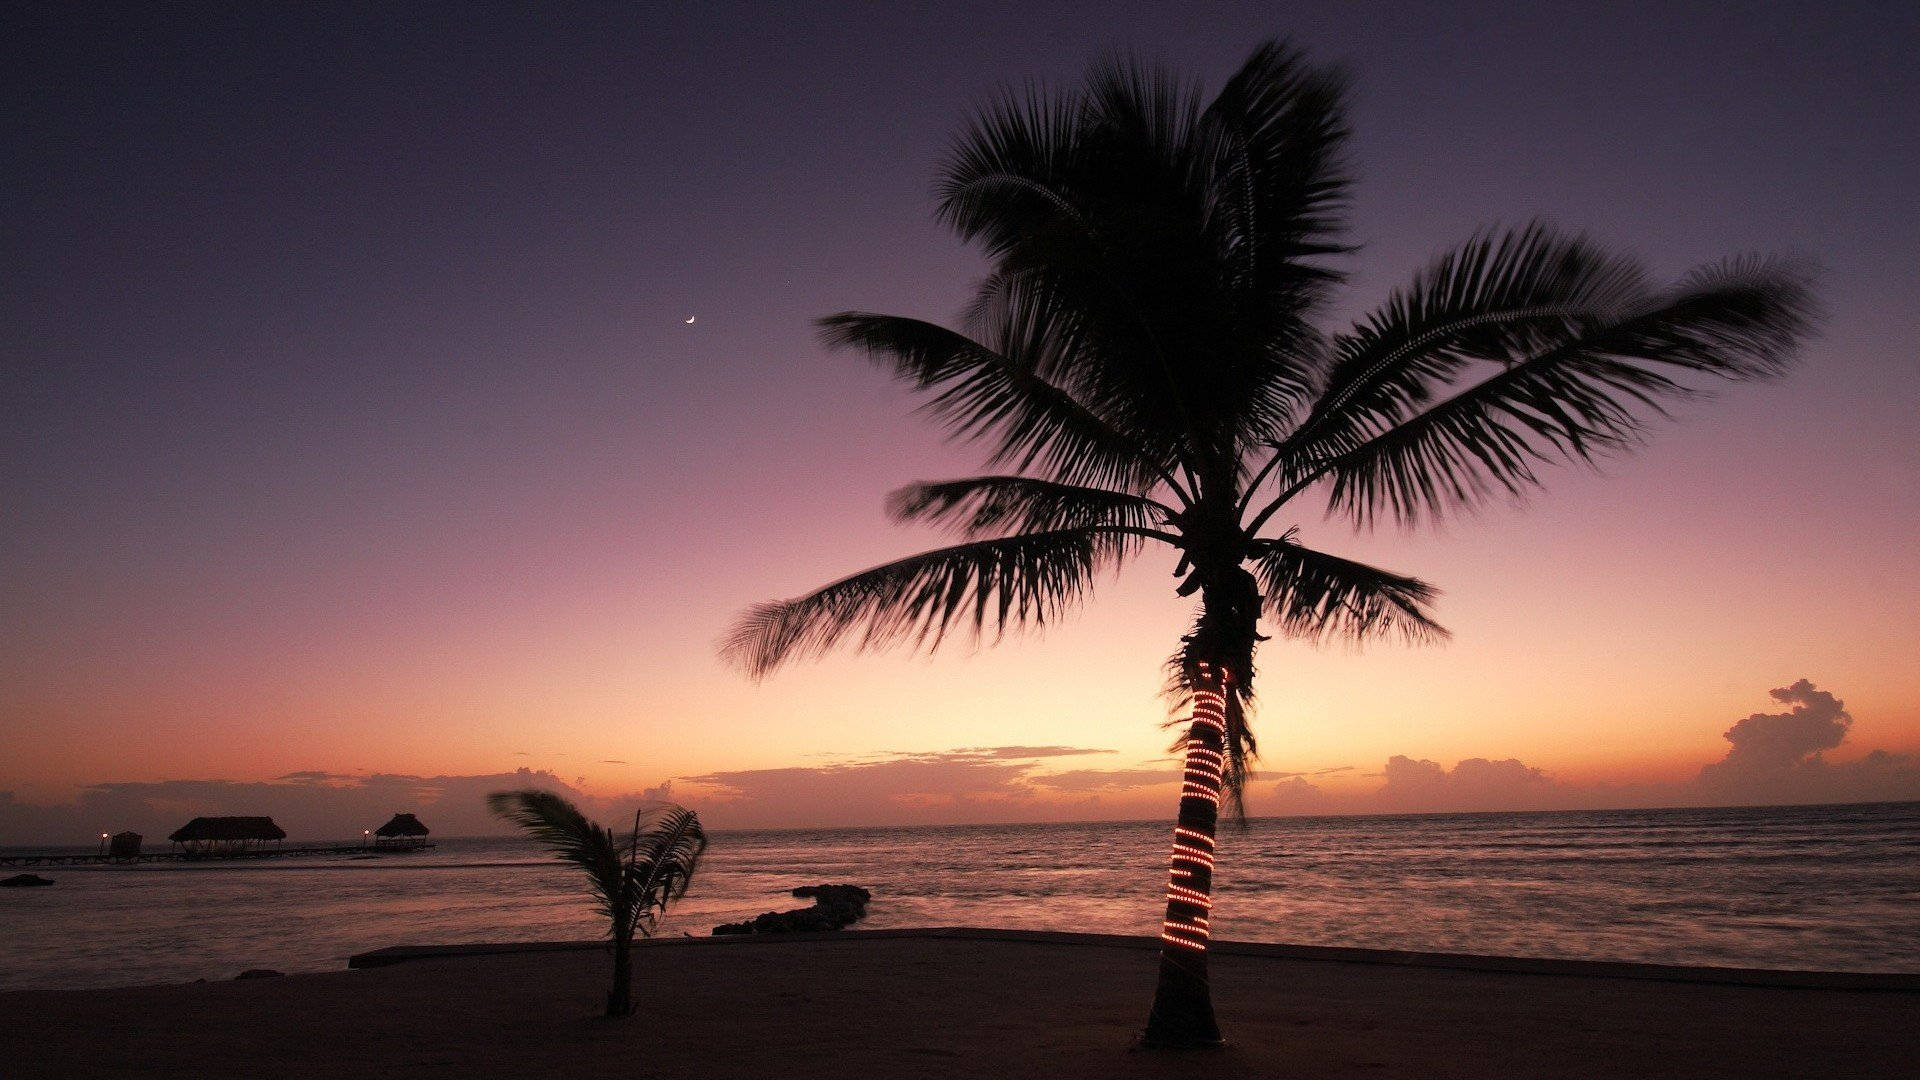 Natürlicheriesige Palme Am Strand Während Des Sonnenuntergangs Wallpaper